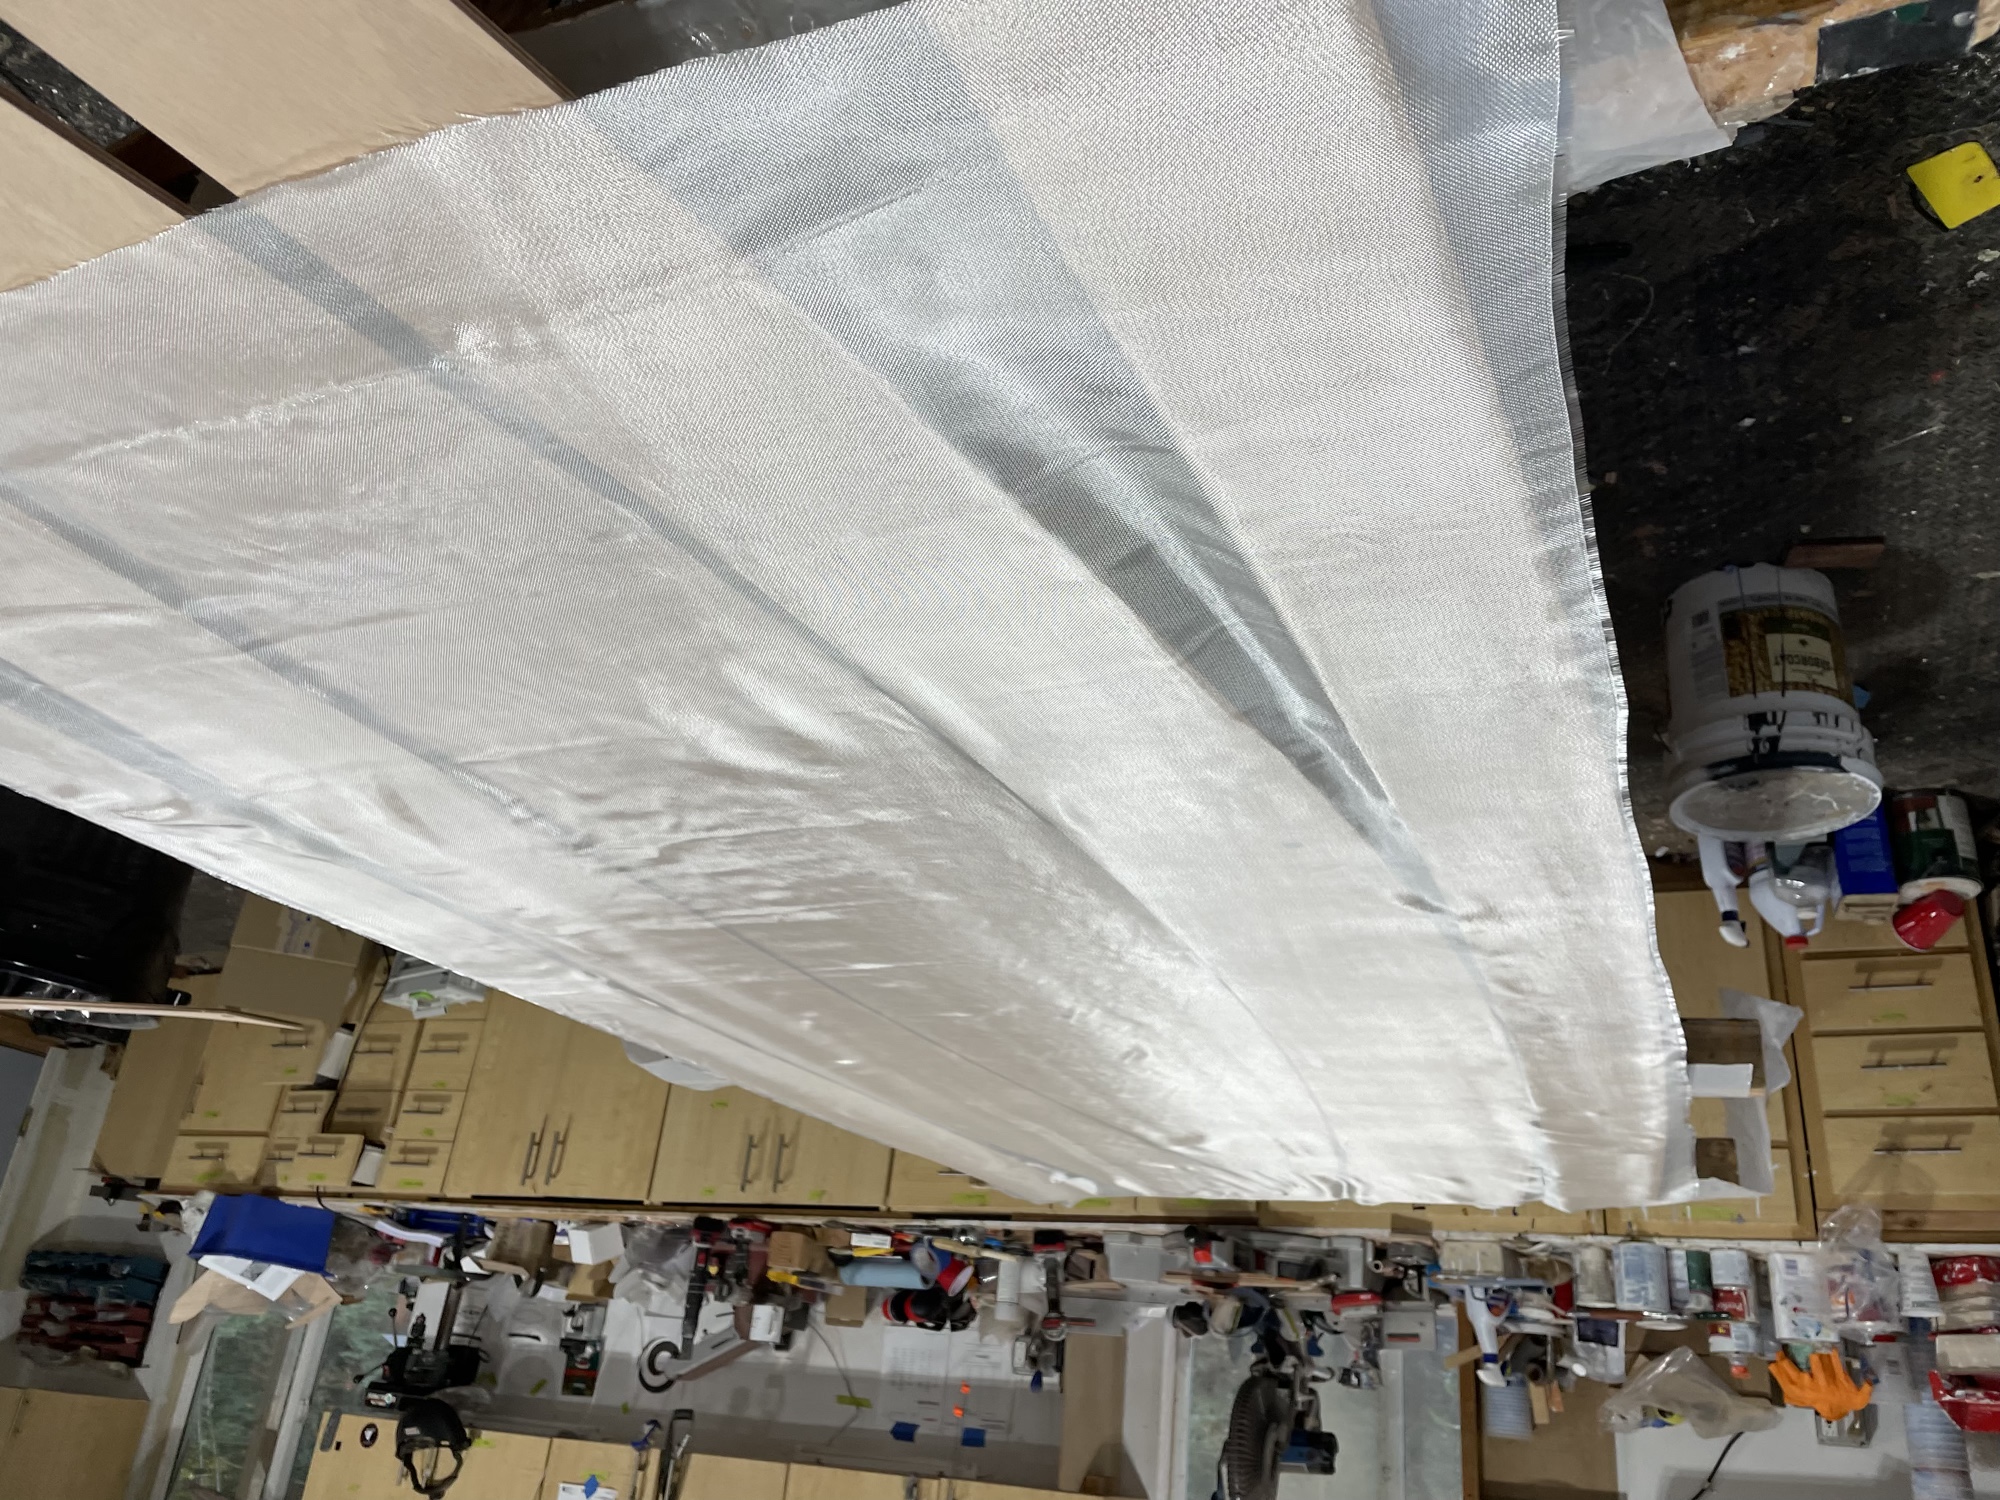  10/13/22 - Fiberglass is laid on hull panels. 